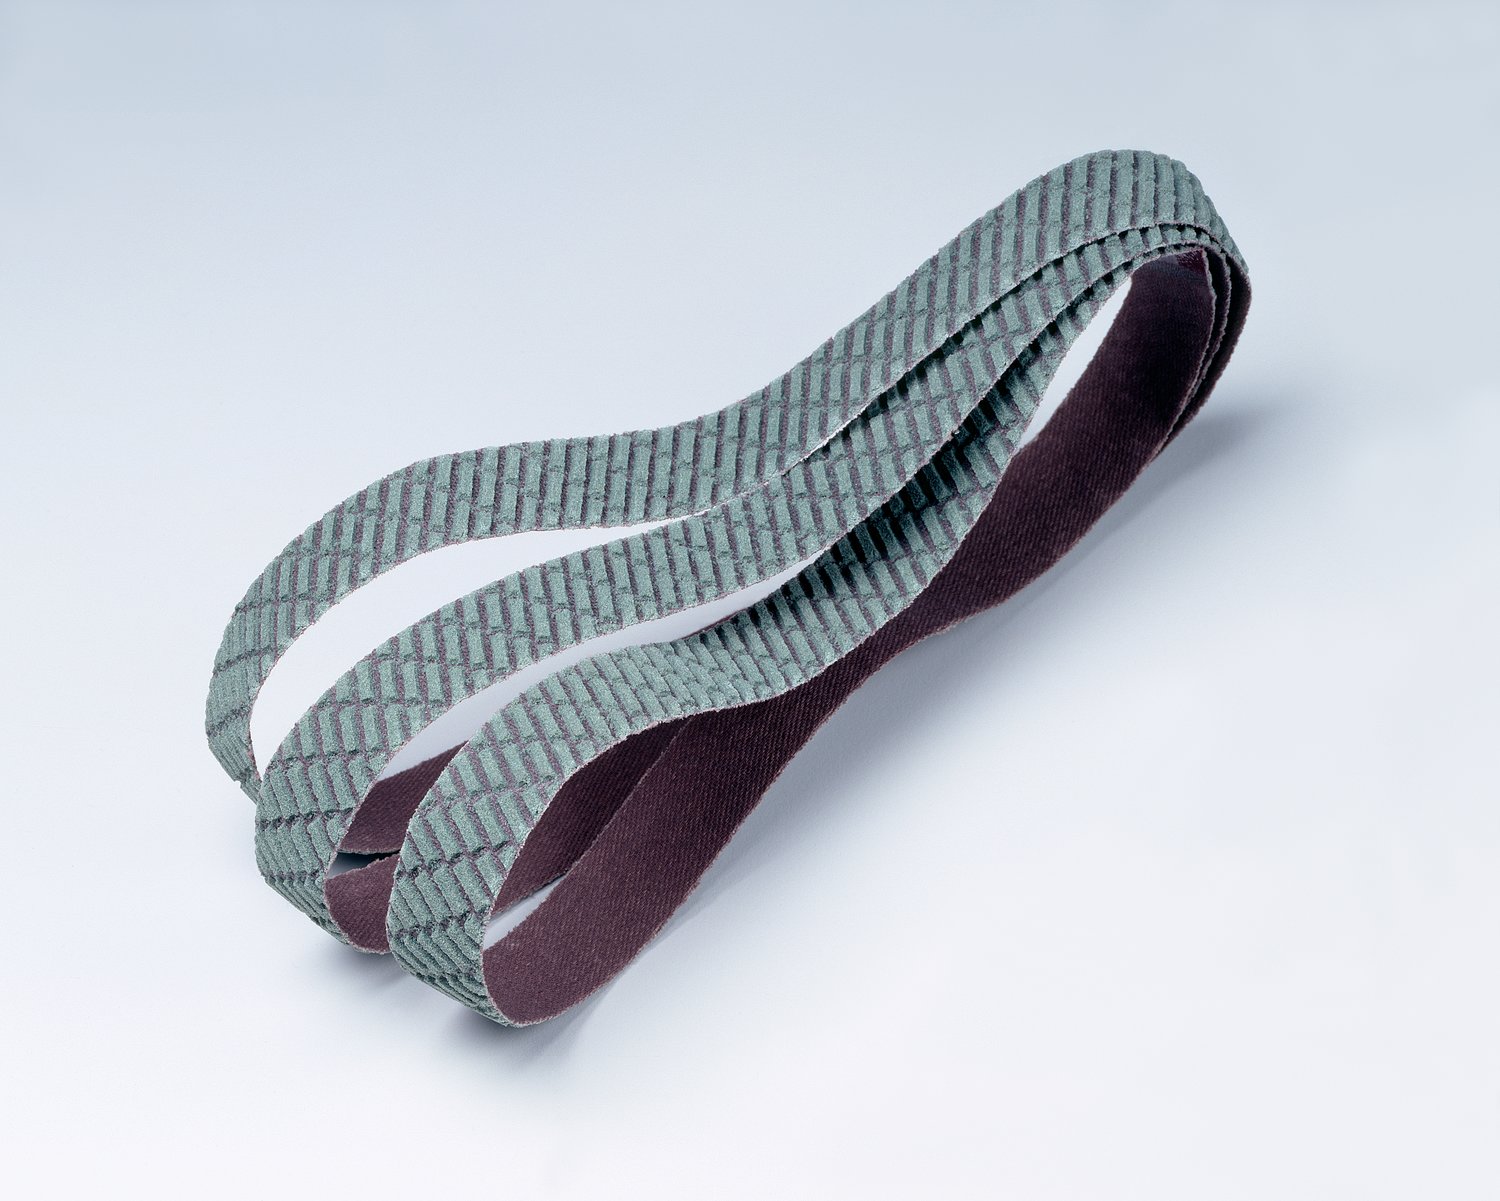 7010515013 - 3M Trizact Cloth Belt 327DC, A45 X-weight, 2 in x 72 in, Film-lok, No
Flex